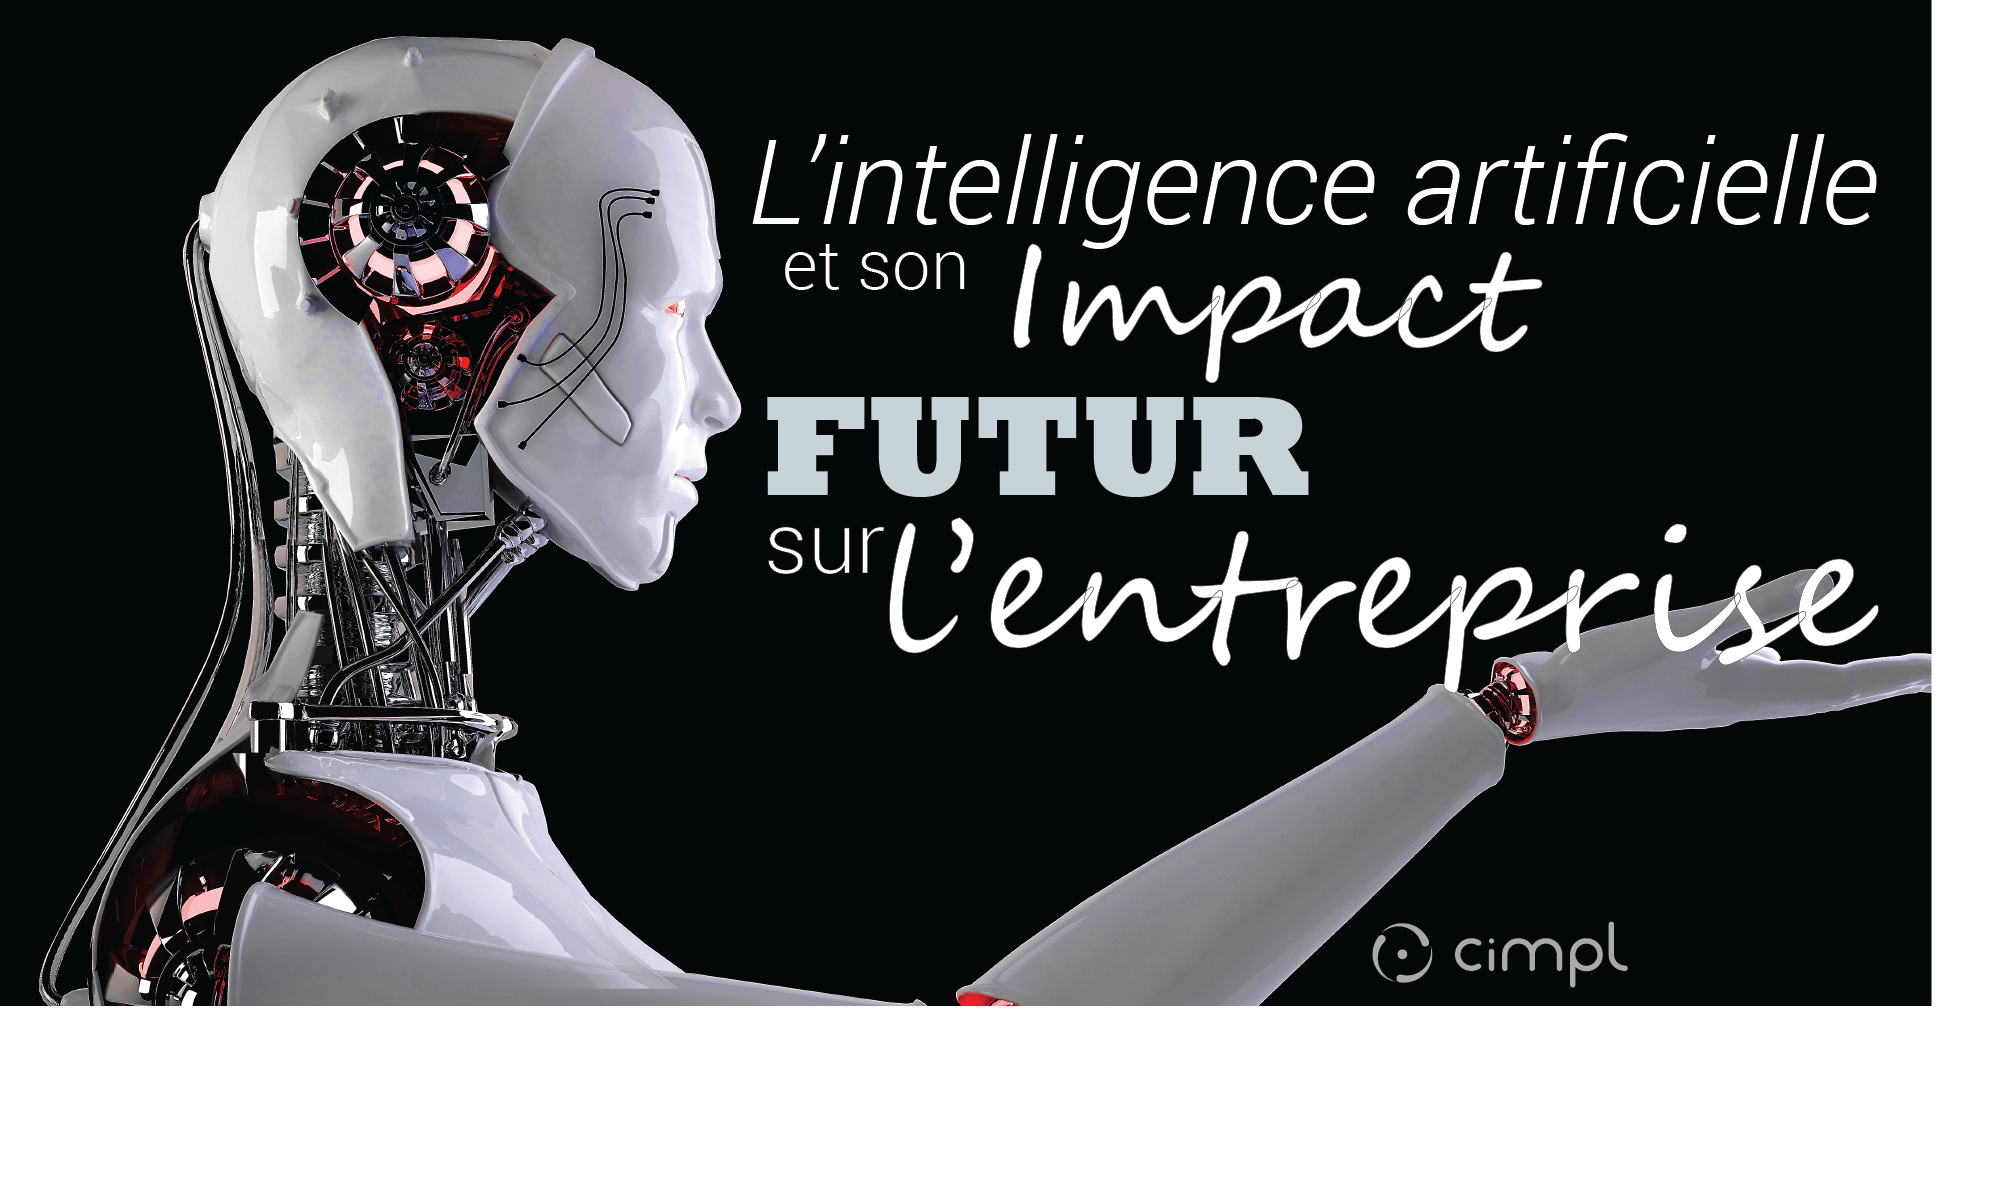 L'intelligence artificielle et son impact futur sur l'entreprise ...